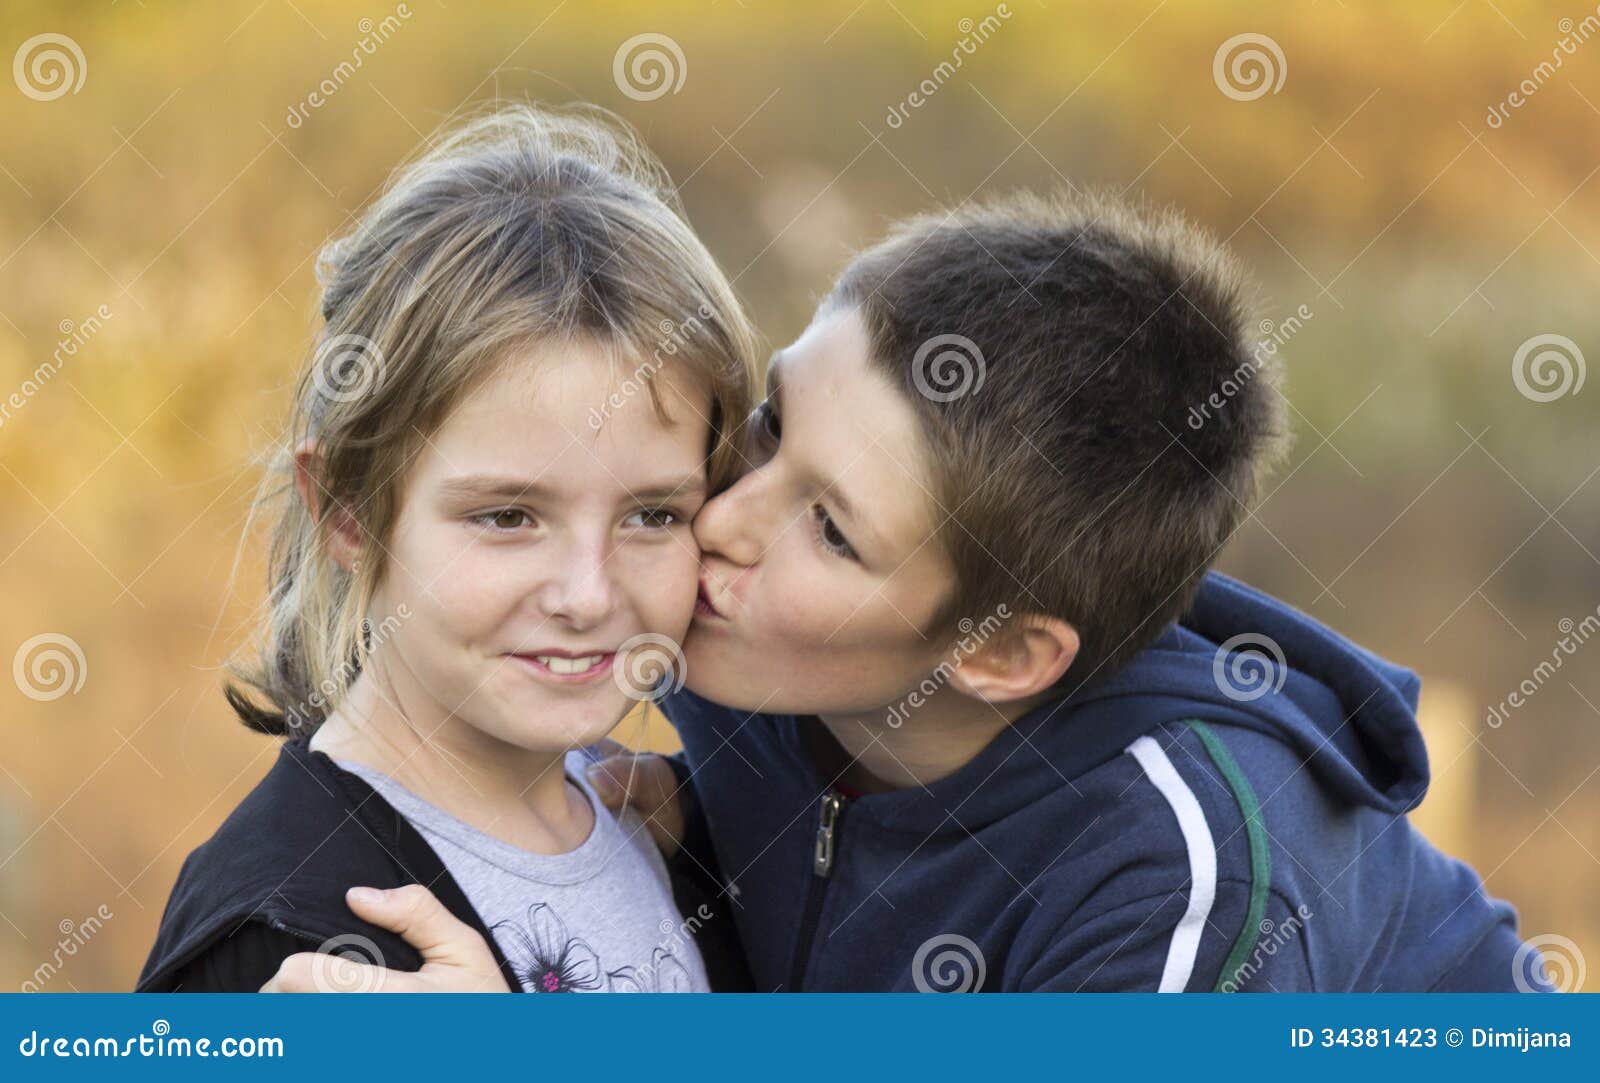 Boys kiss girls. Поцелуй детей в школе. Мальчик целует девочку в школе. Поцелуй в щечку дети школа. Поцелуи детей 12 лет в школе.